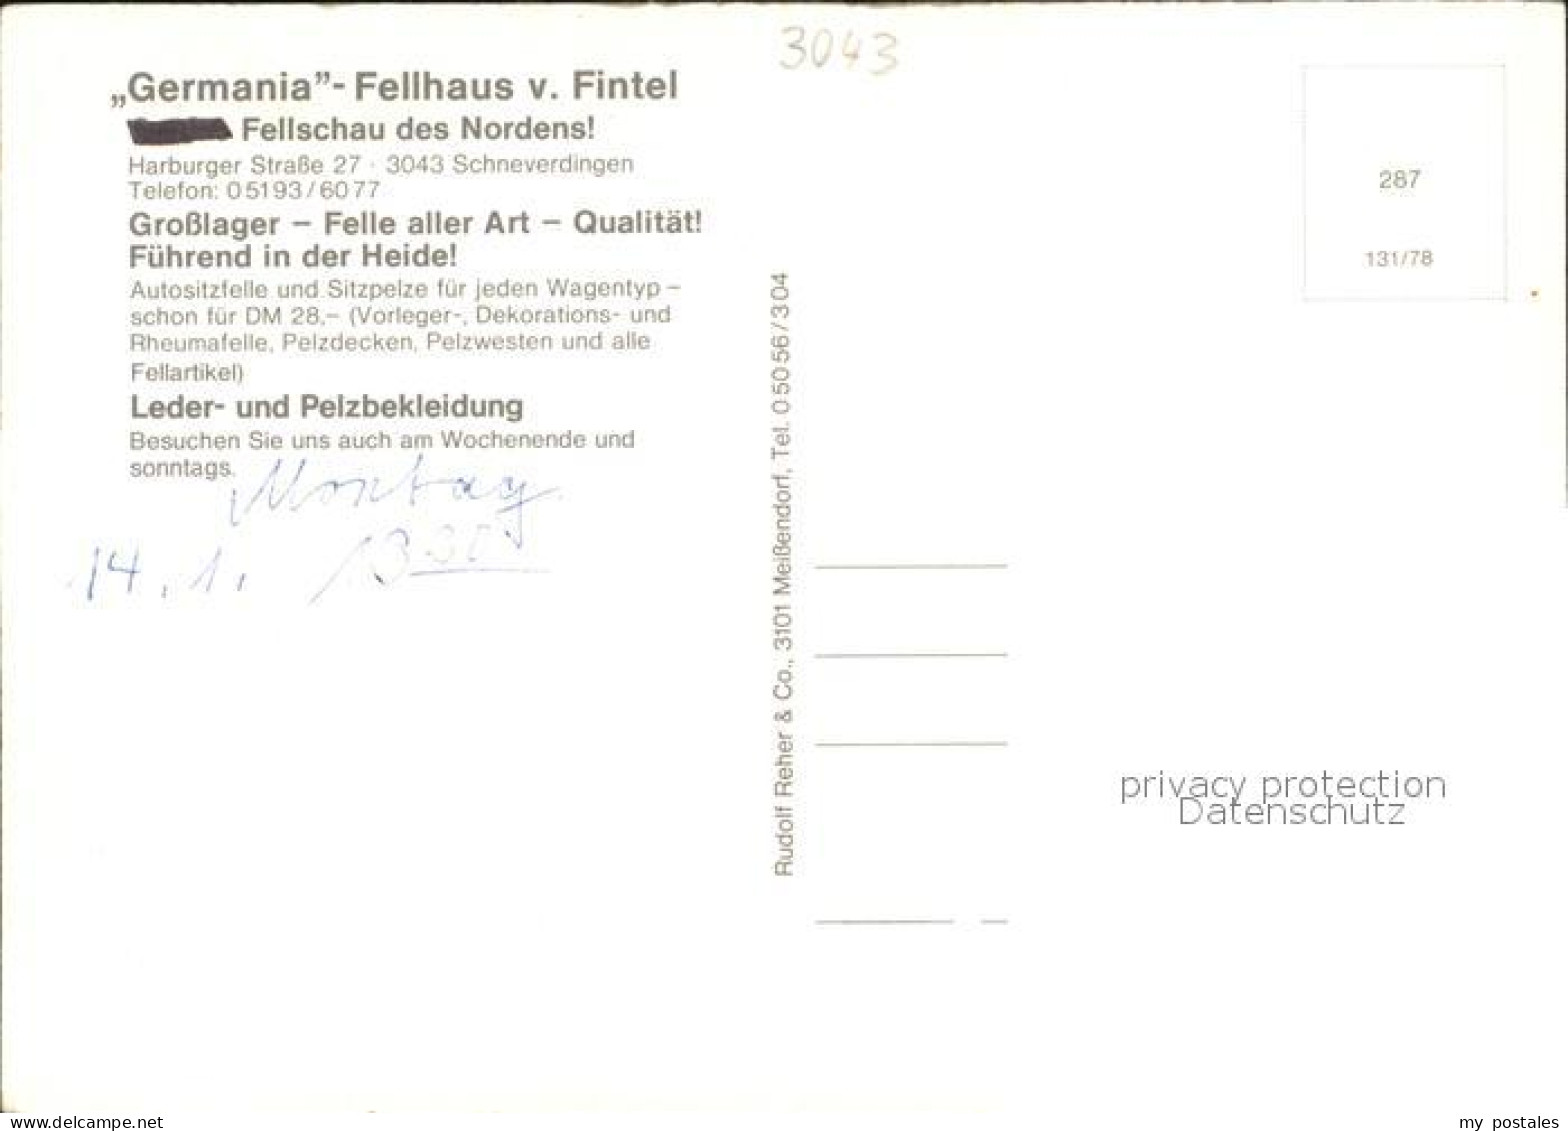 42599950 Schneverdingen Germania Fellhaus Von Fintel Autopelz Grosslager Schneve - Schneverdingen